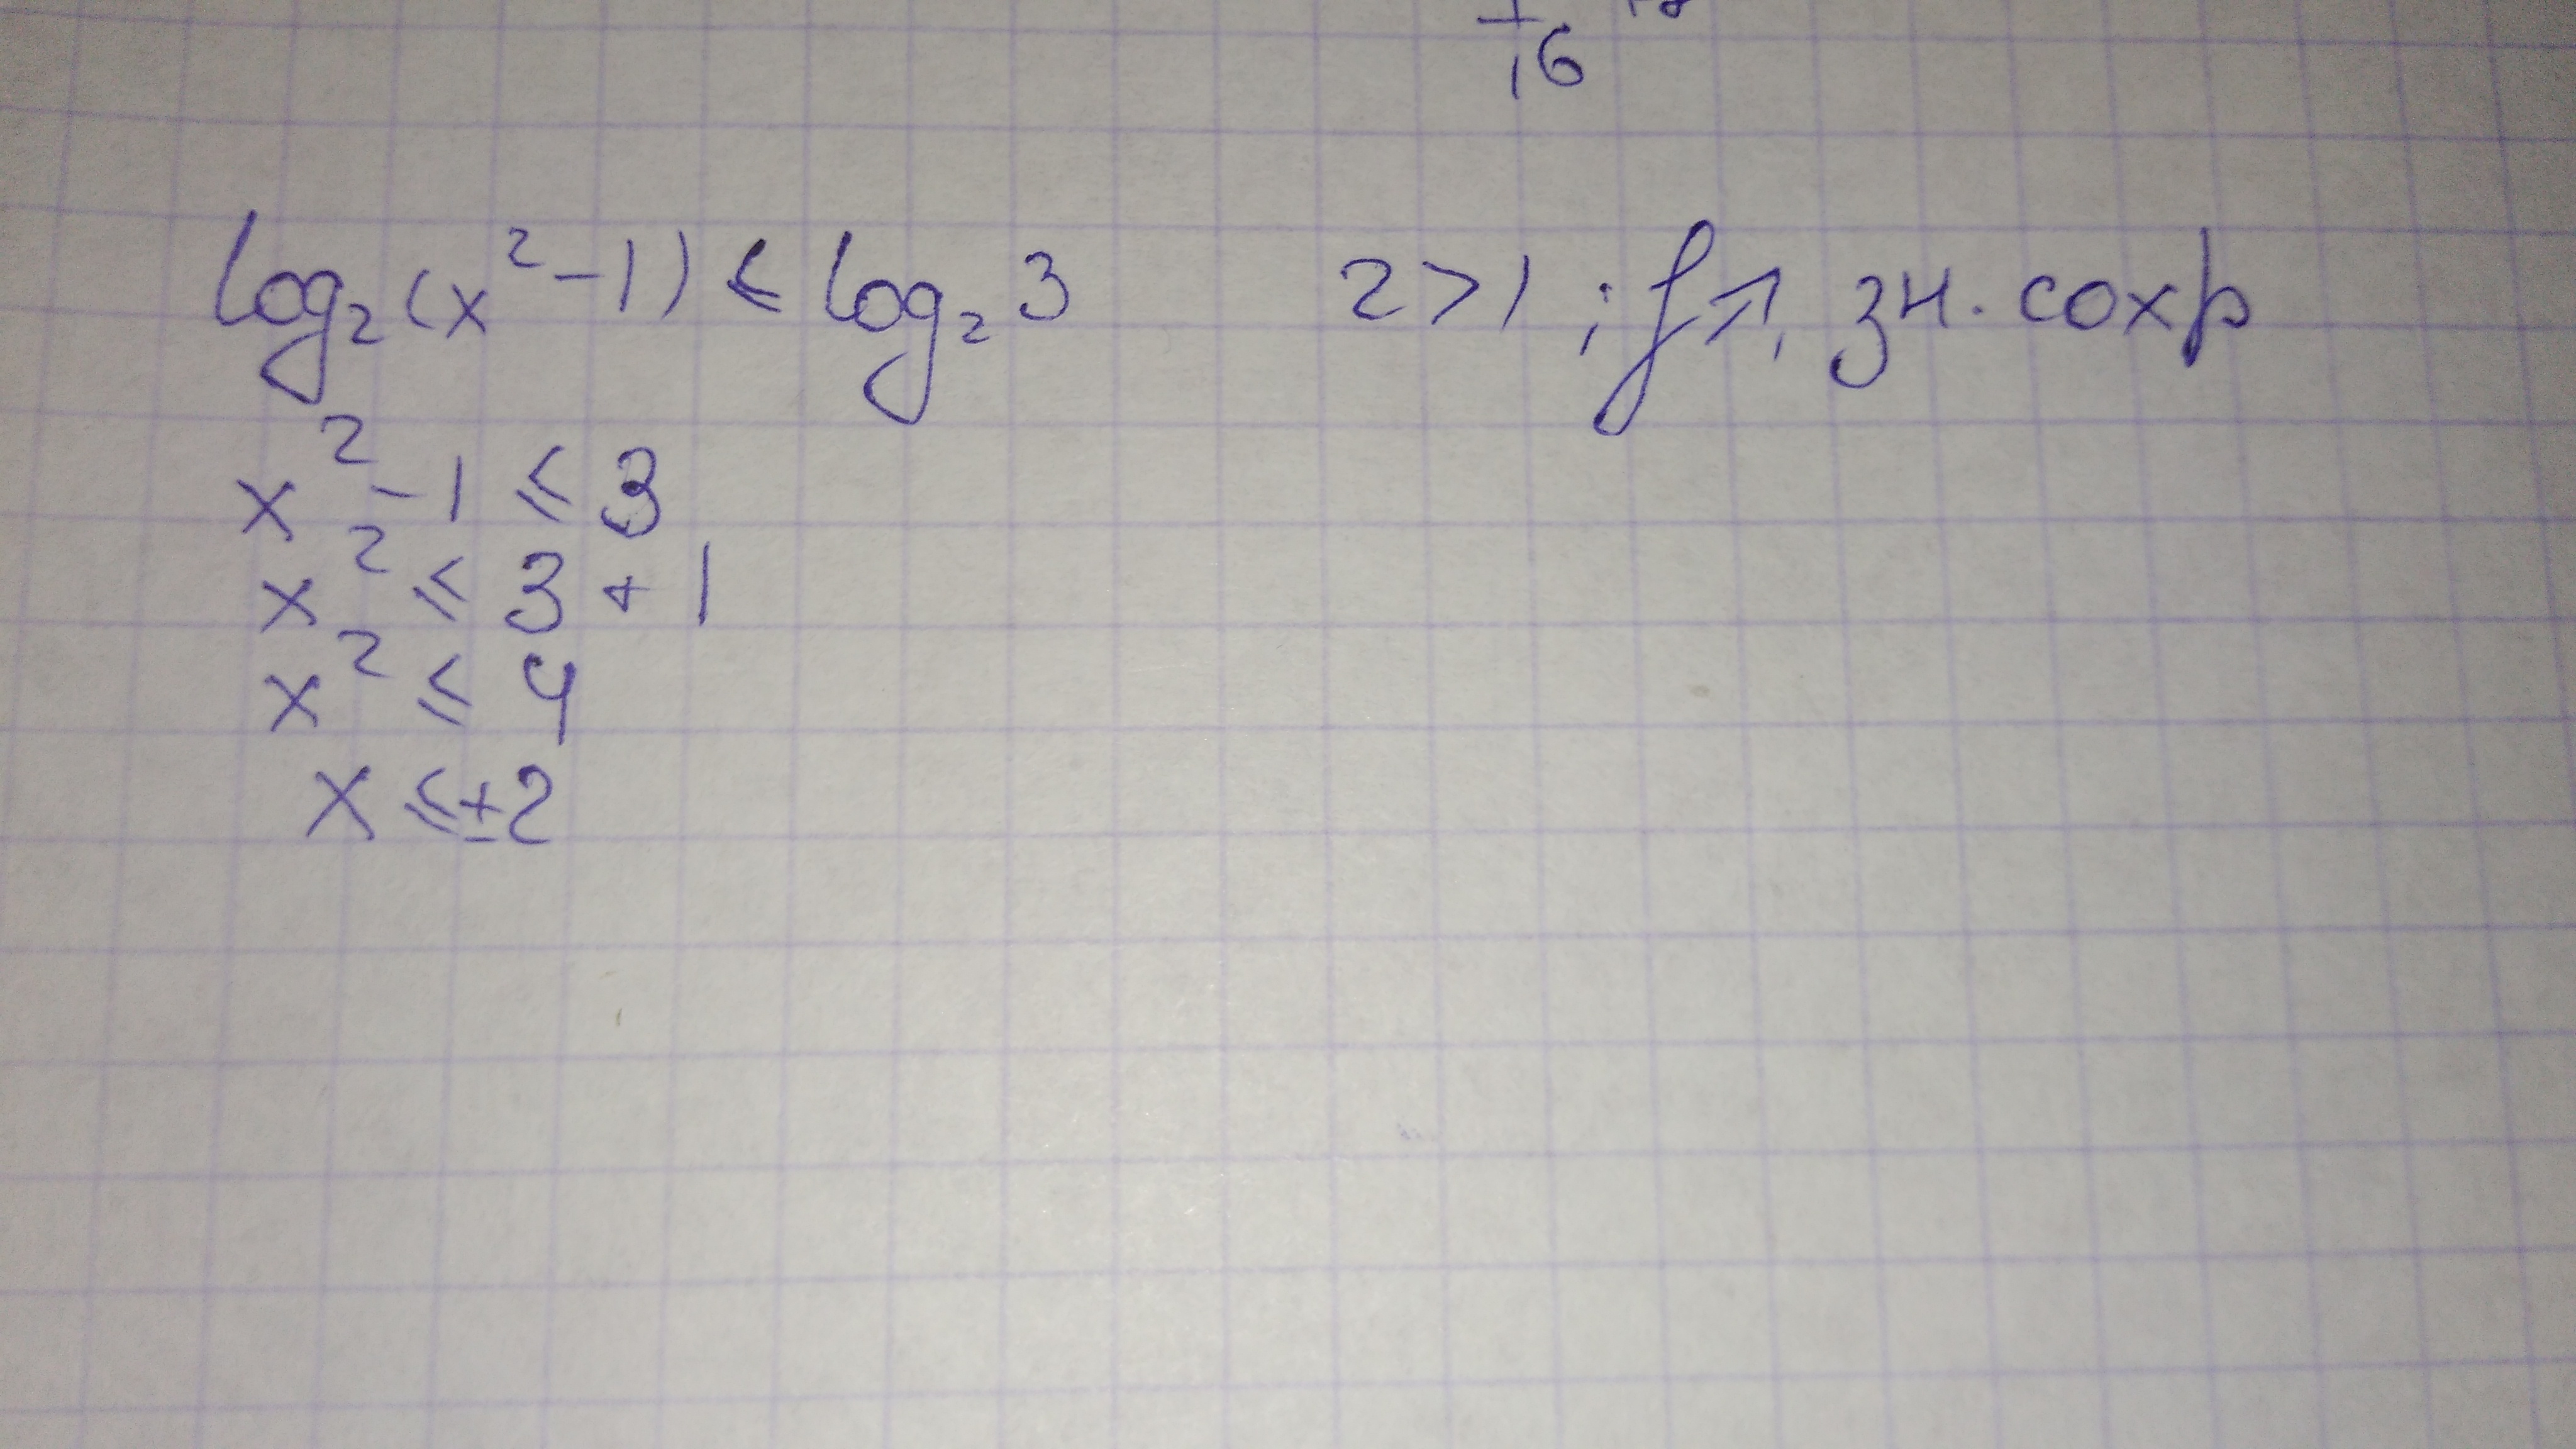 Log x 2 81 2. Log (x-3) по основанию 1/2 >2. Решить неравенство log(x-1) по основанию 2 меньше 1. Лог2x по основанию 3. Log( 2-x-x^2) по основанию ч больше 0.